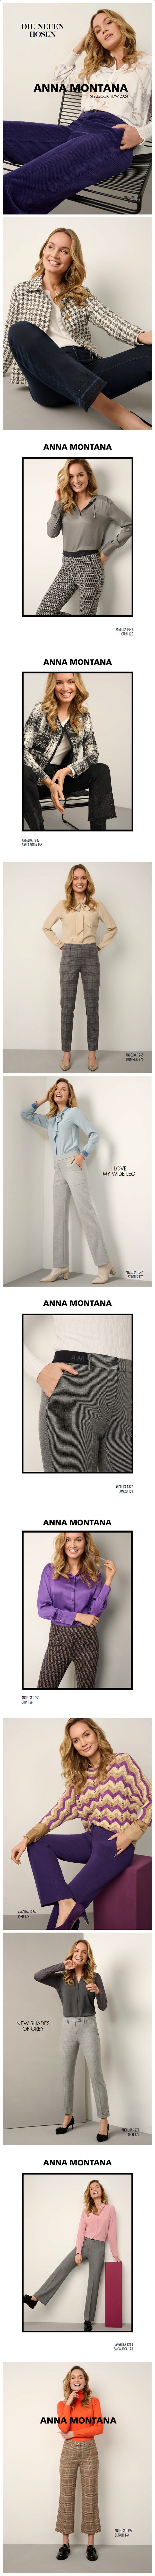 Stylebook by Anna Montana